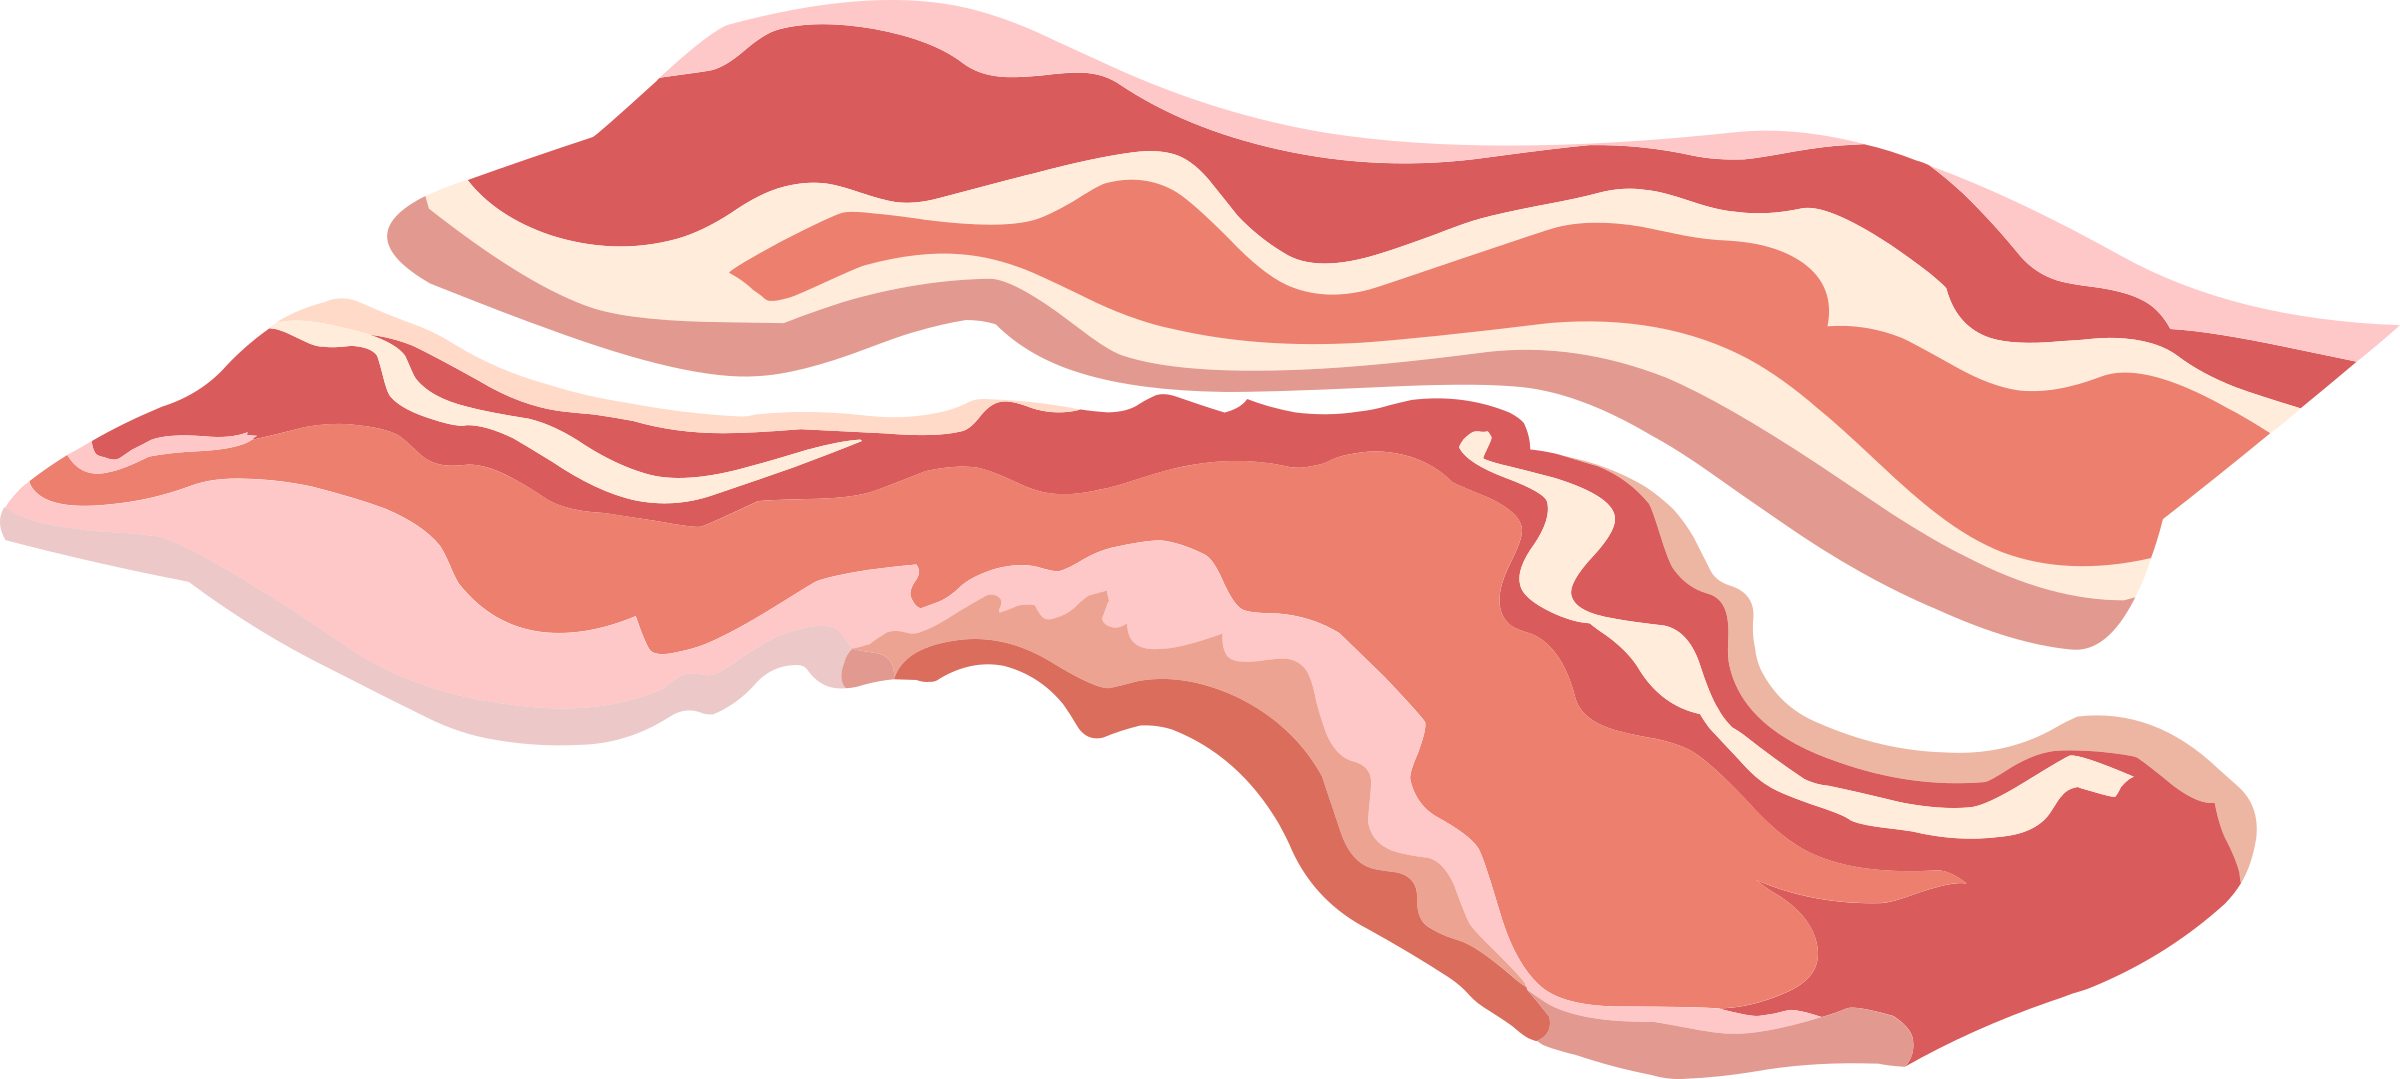 Fond Transparent du bacon